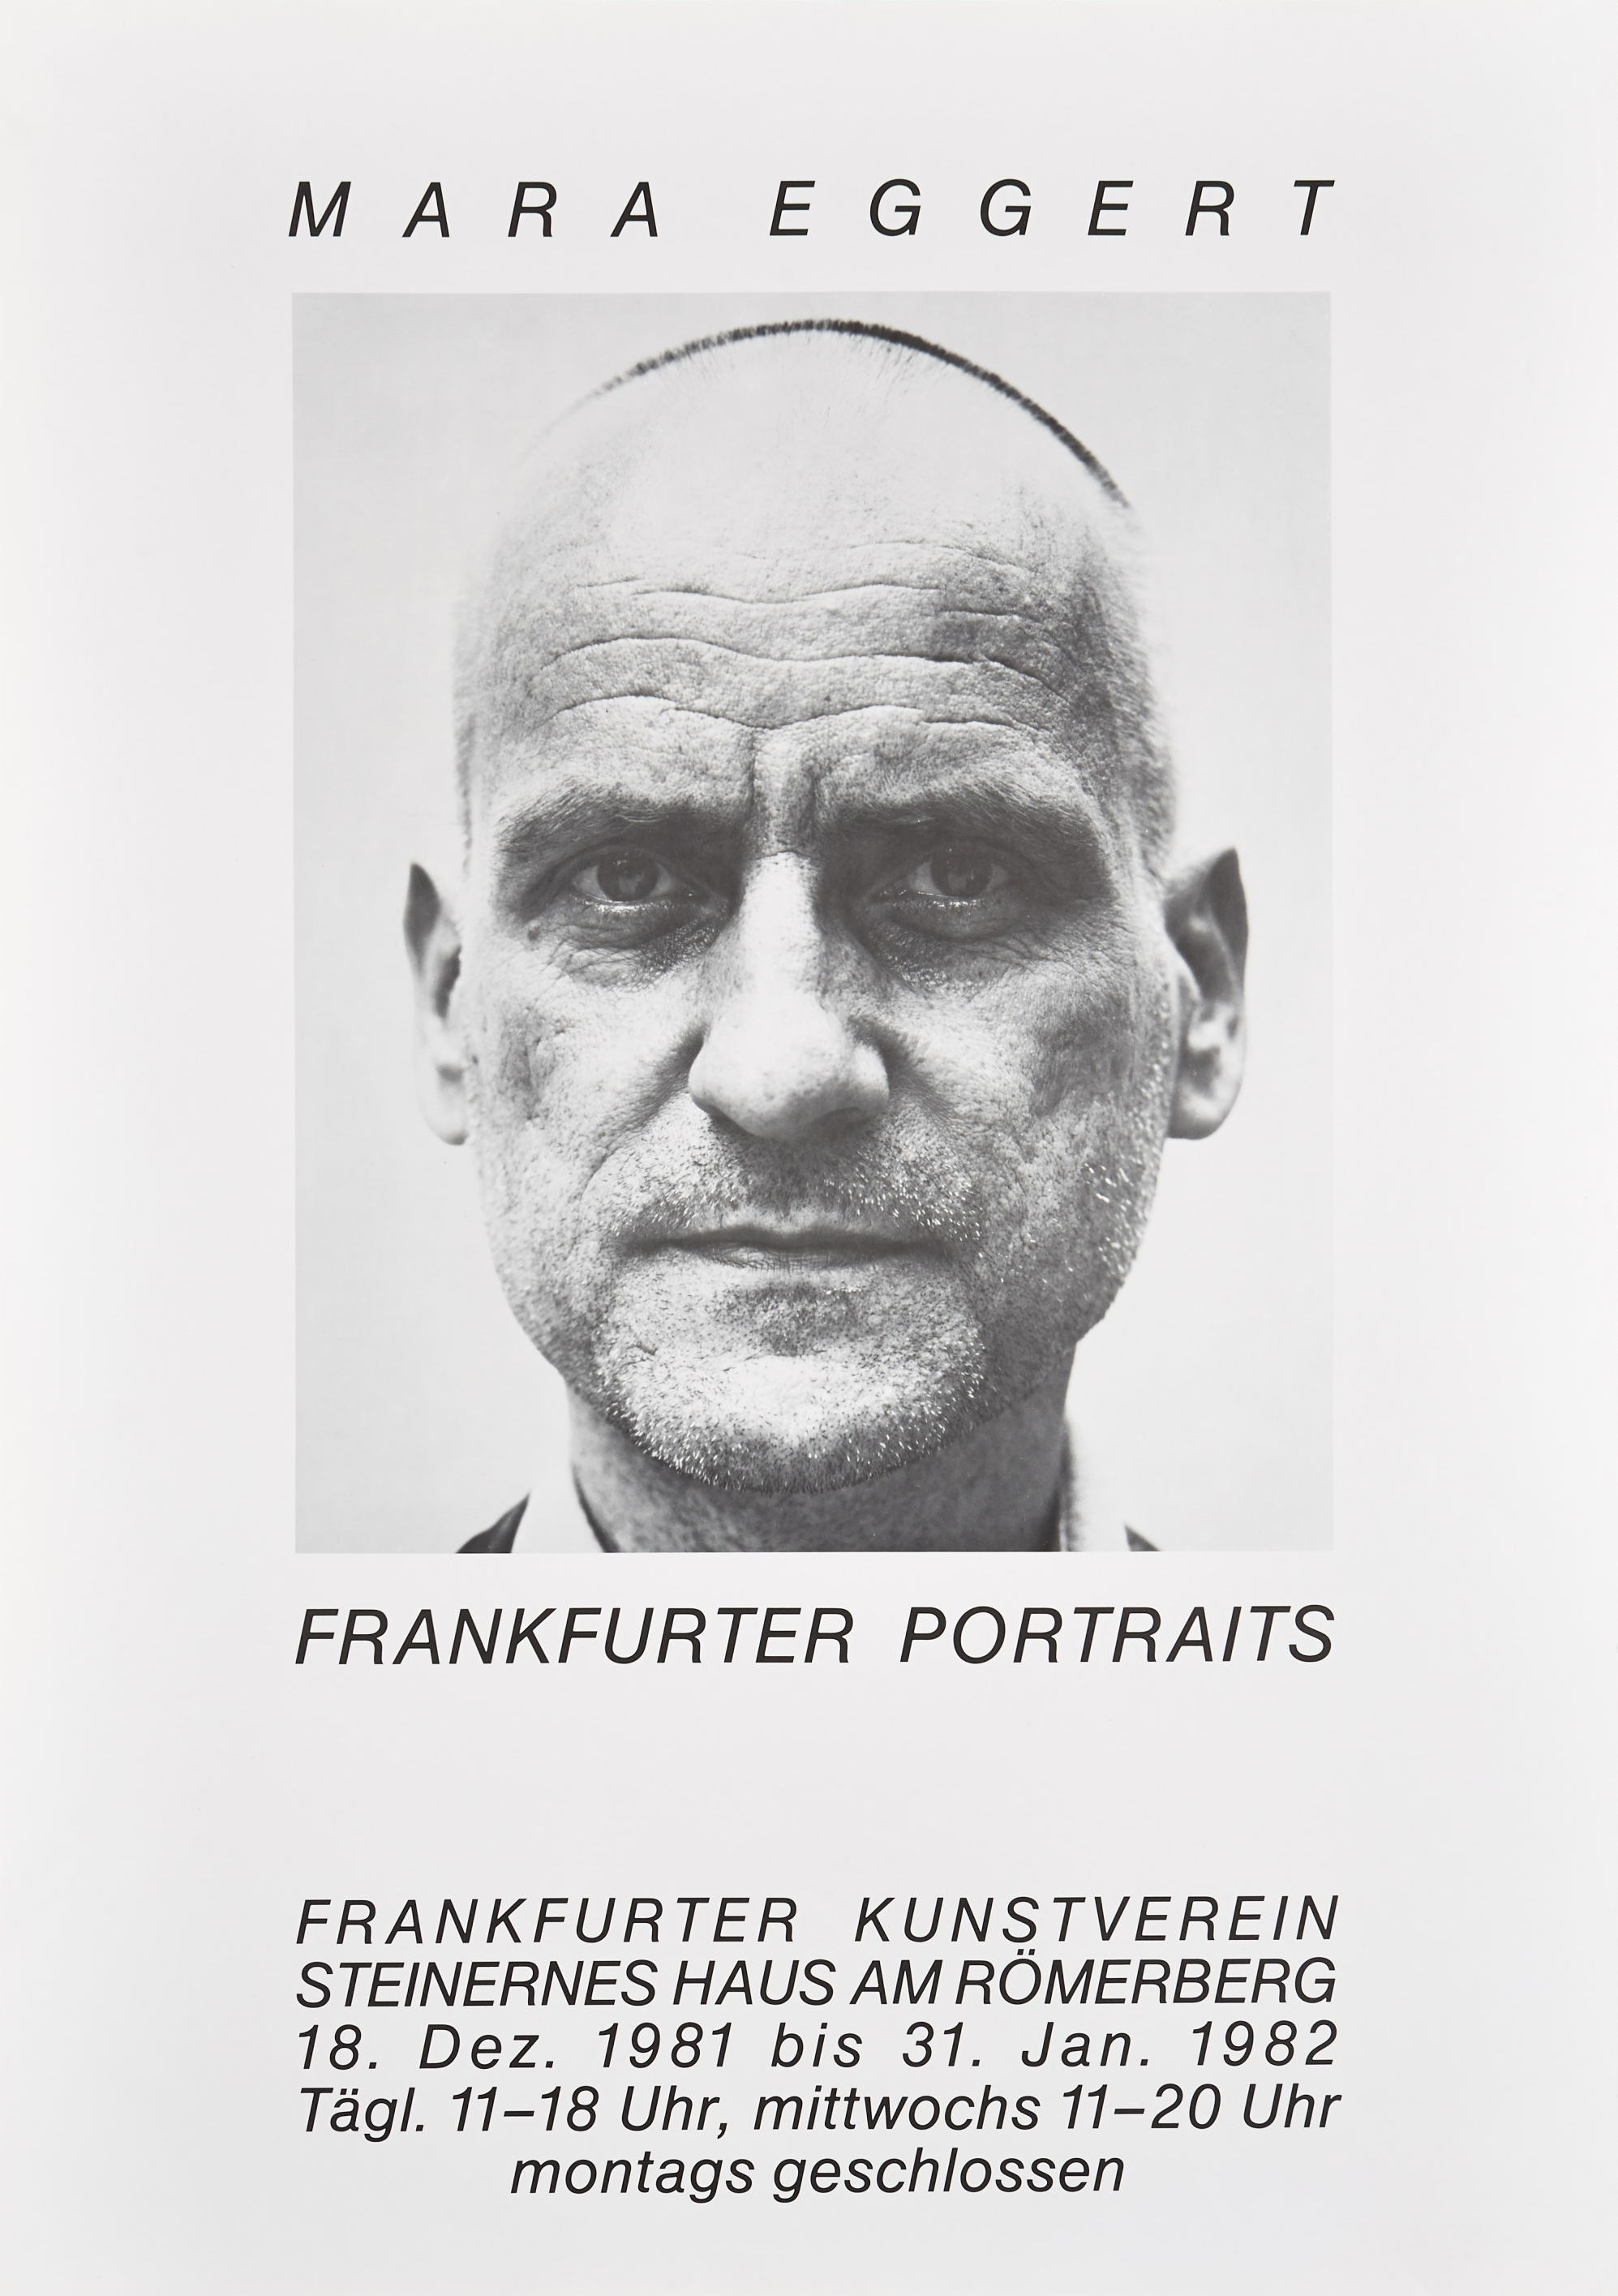 FKV_Plakat_1981_Mara Eggert_Frankfurter Portraits.jpg